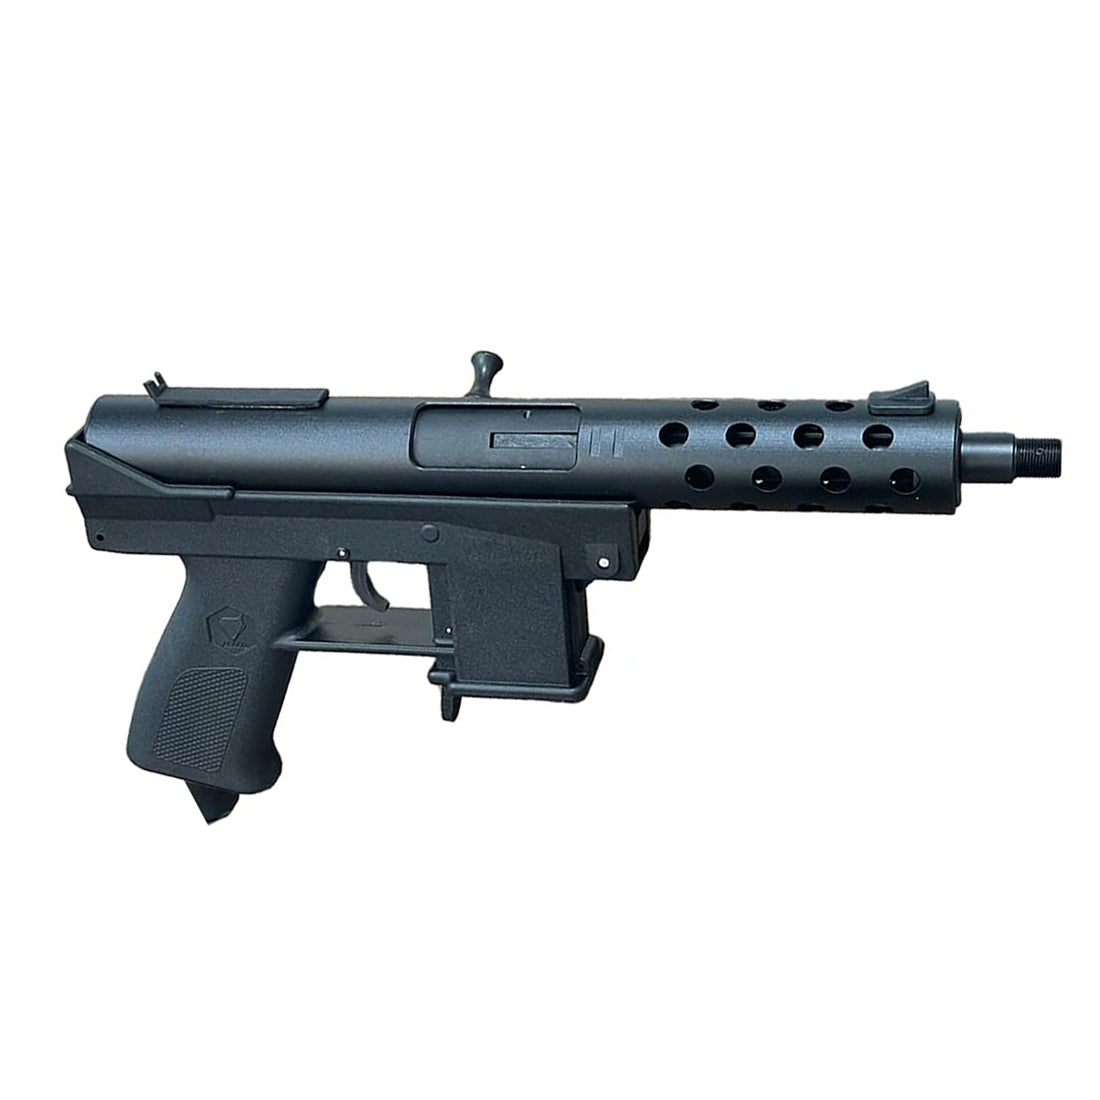 割引商品  リボルバー ショットガン風おもちゃ銃 DX-12  TEC-9 電動サブマシンガン ディスカウント・セール 半額で売る